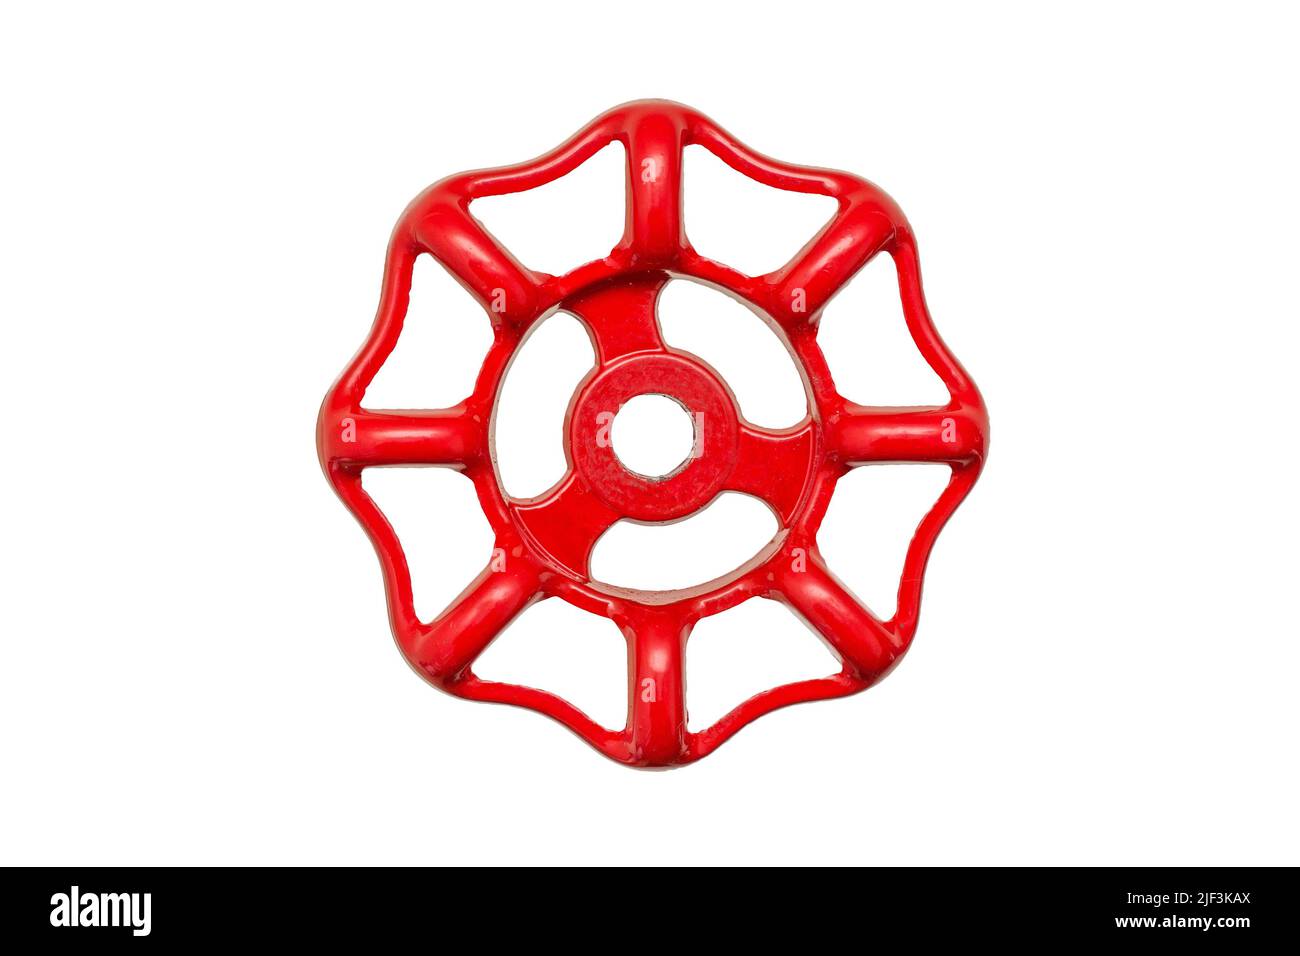 Rotes Handrad für Wasserventil isoliert auf weiß Stockfoto